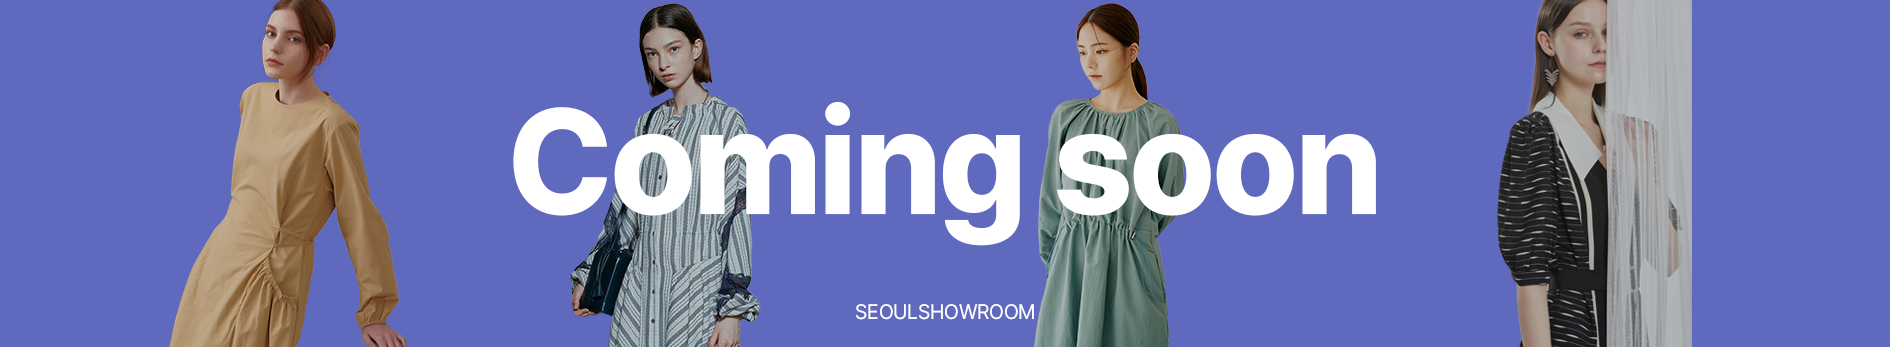 Seoulshowroom